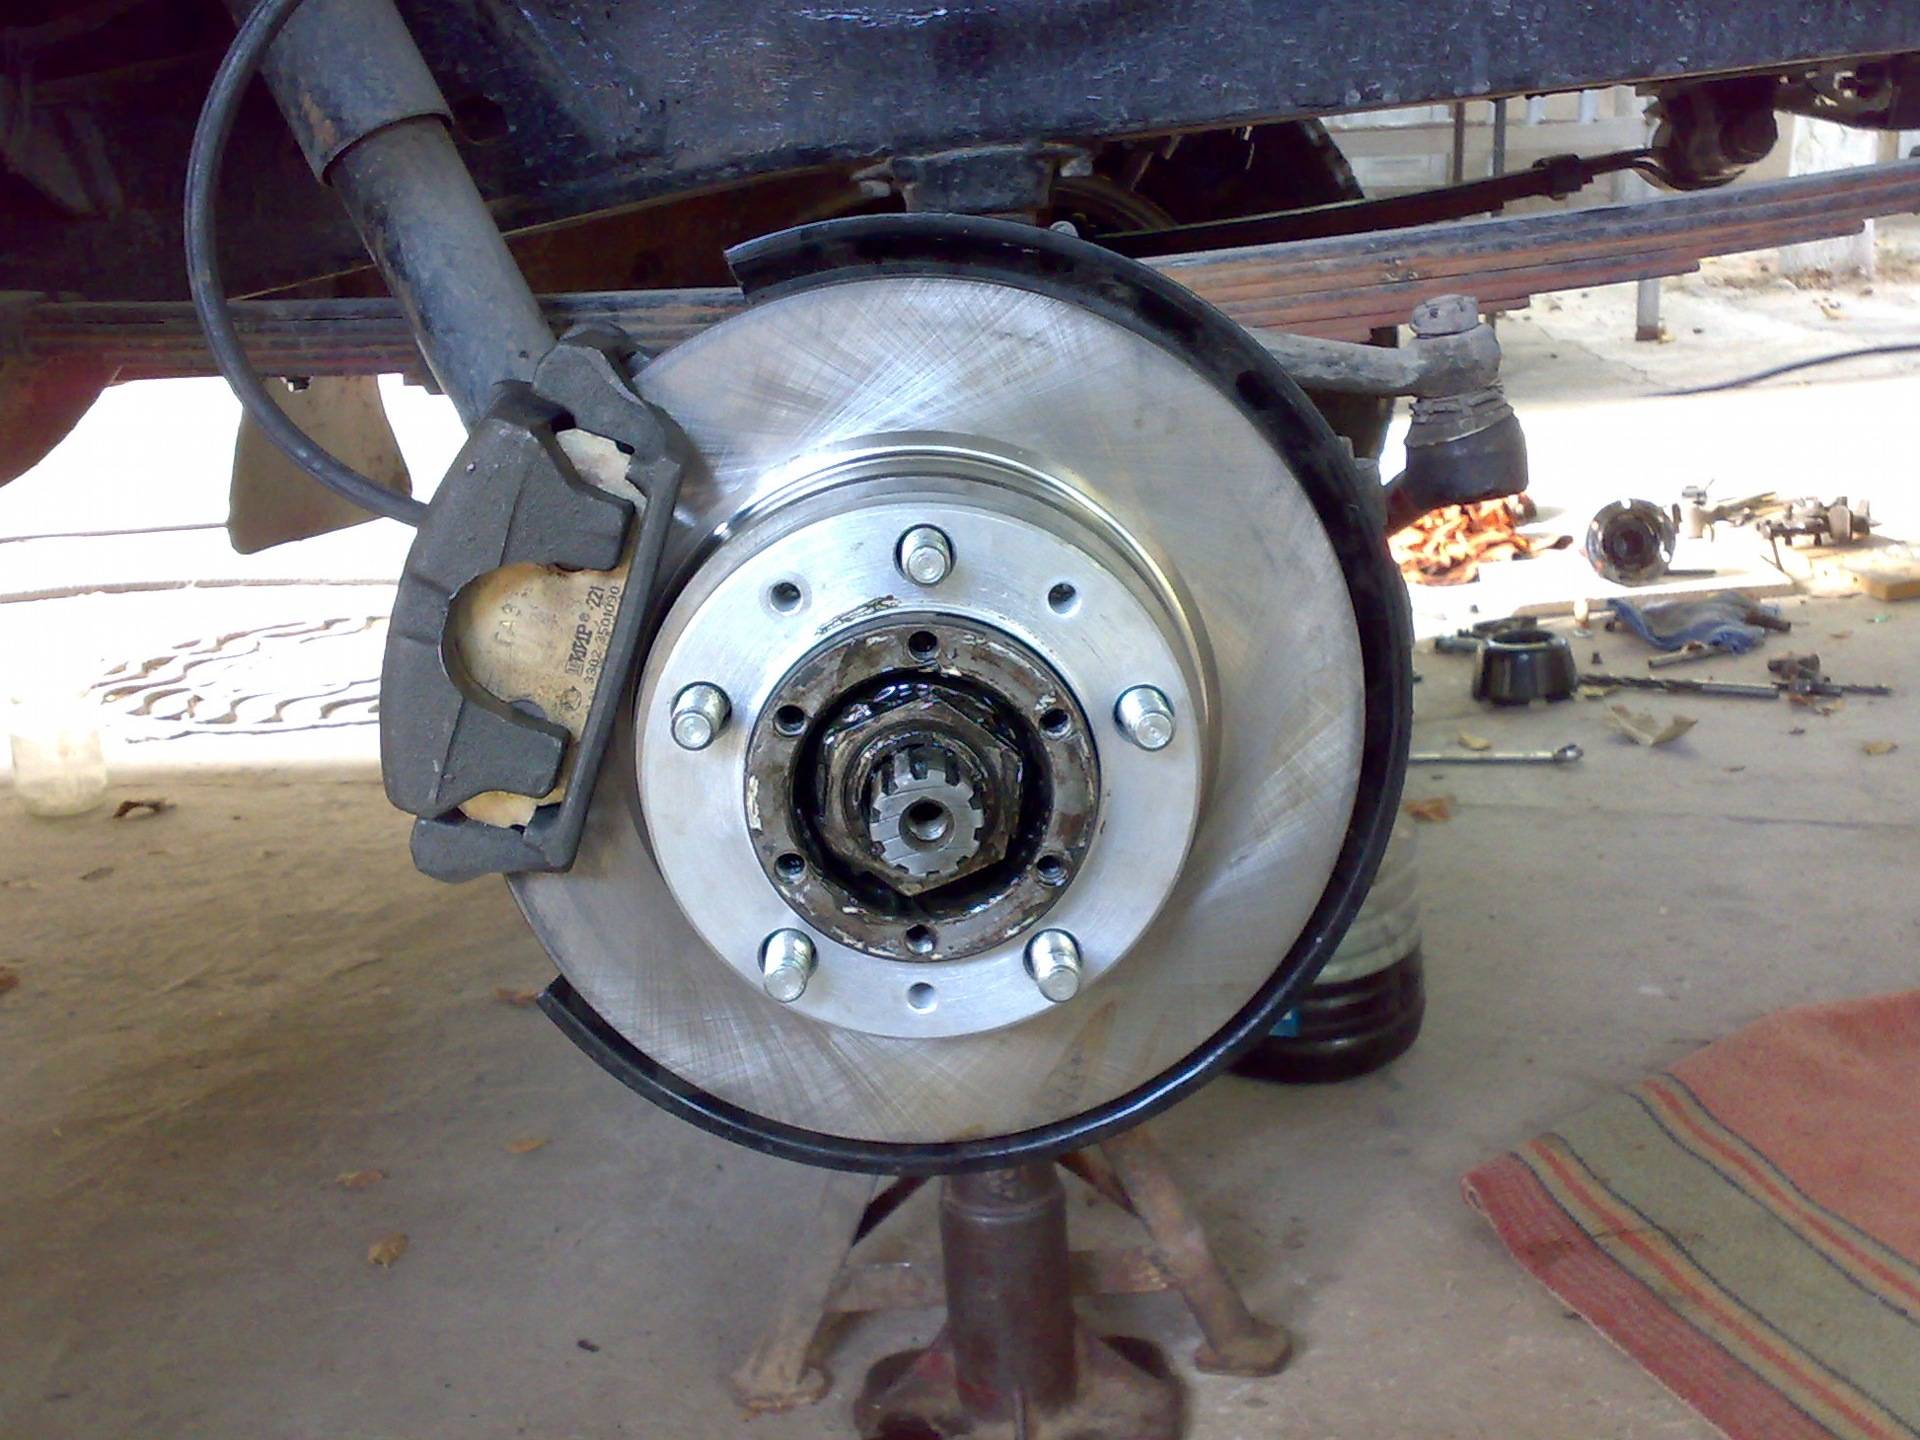 Замена барабанных тормозов на дисковые на примере автомобиля уаз